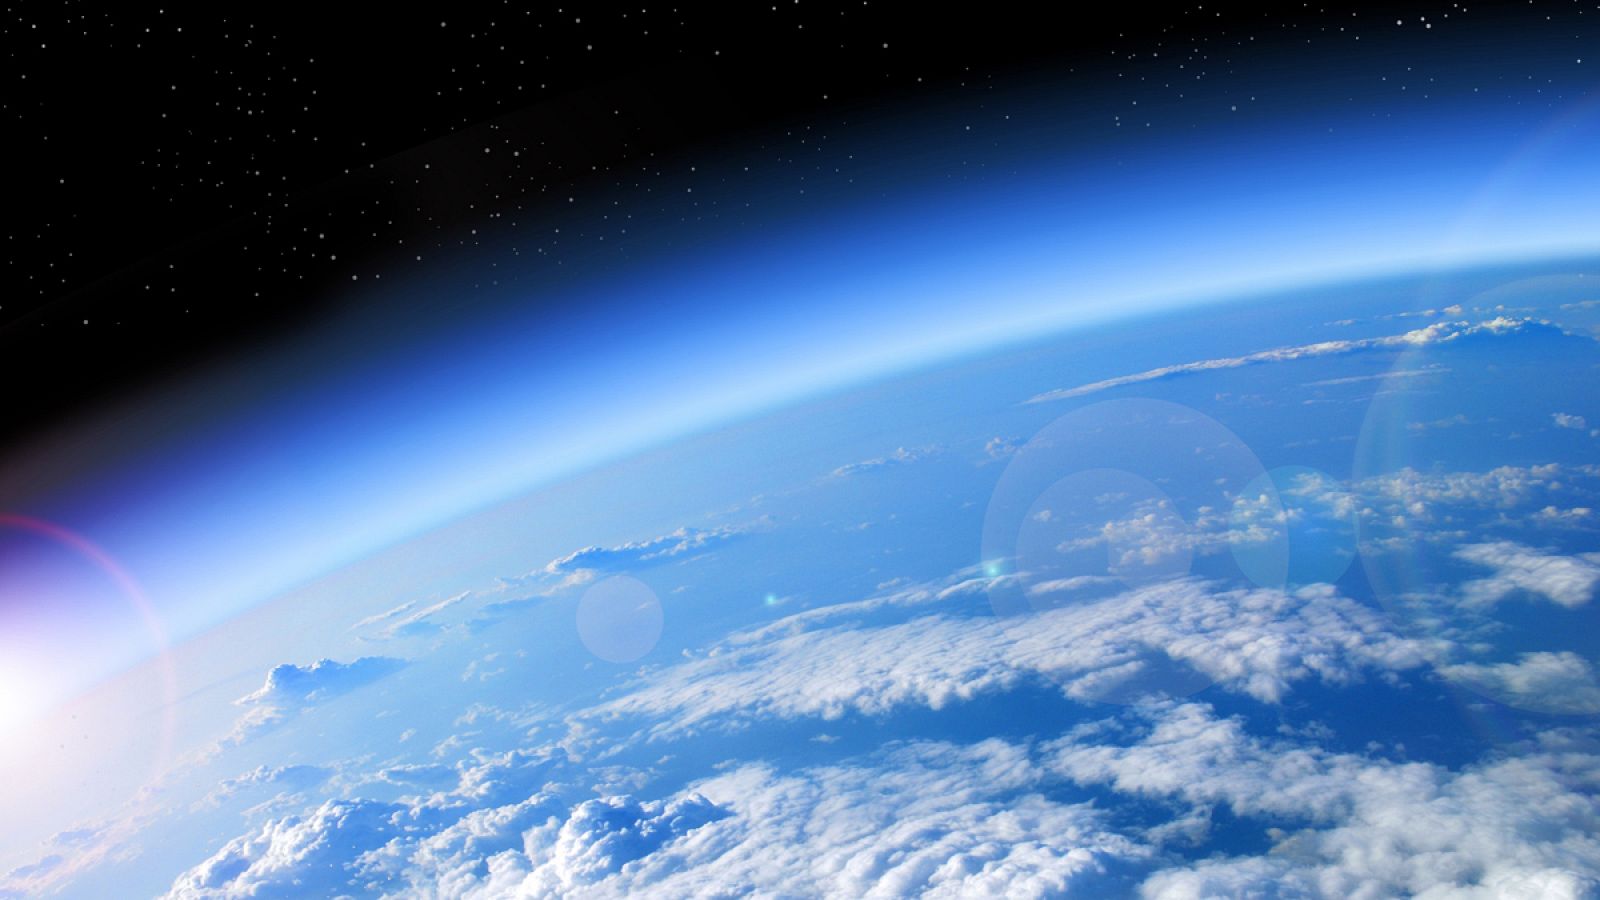 El ozono, elemento esencial en la atmósfera, actúa como una capa protectora natural.